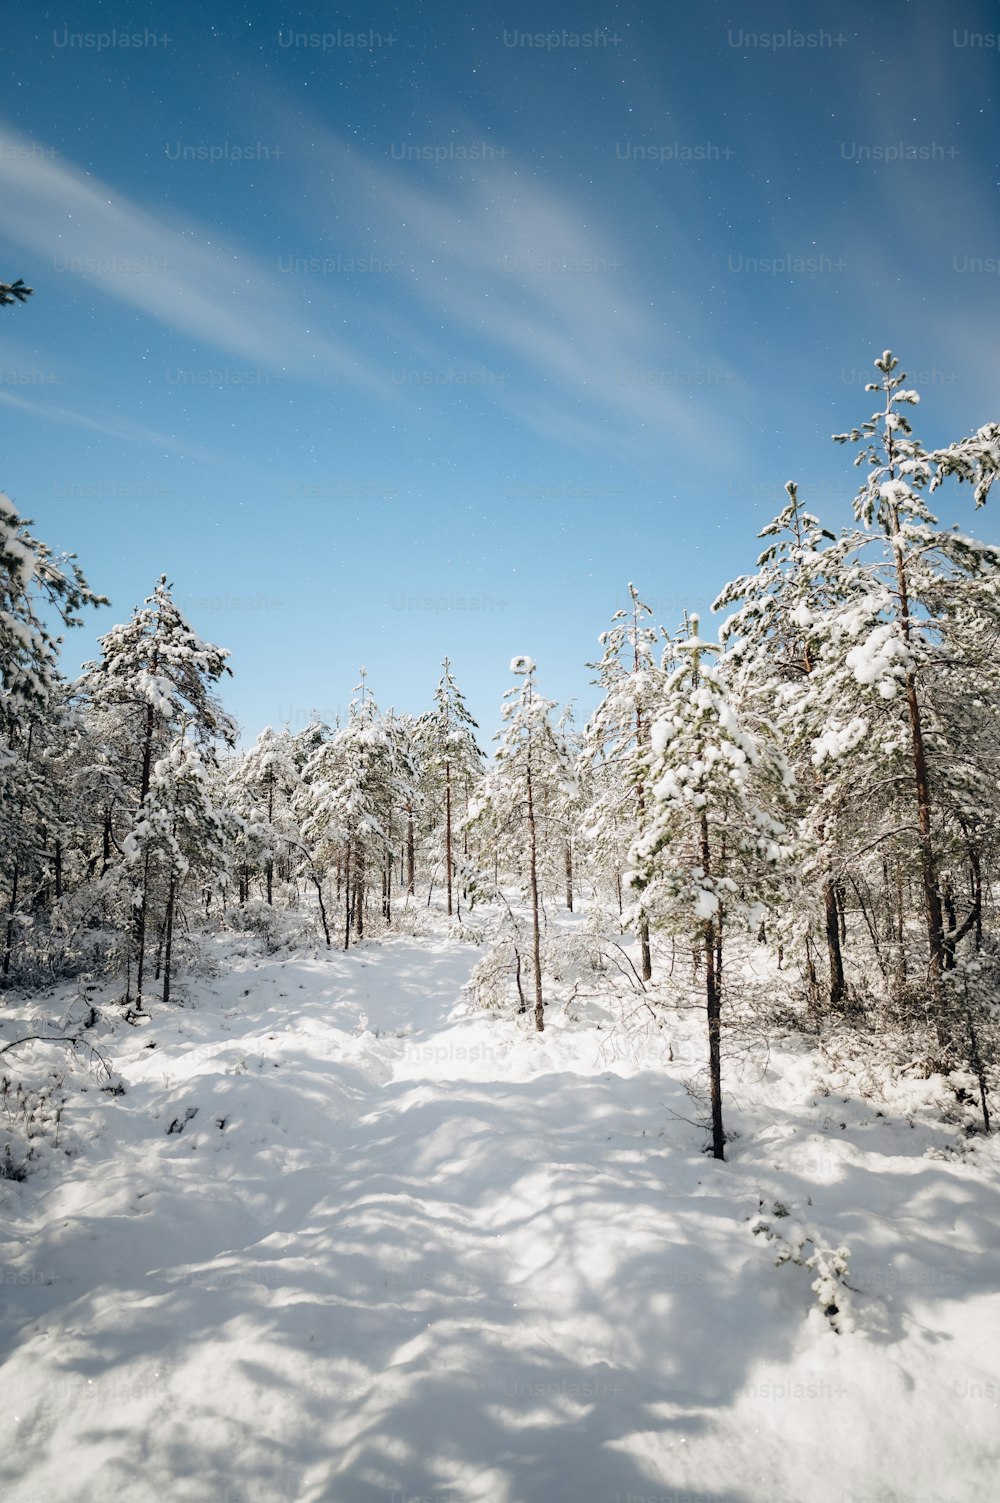 um caminho coberto de neve no meio de uma floresta